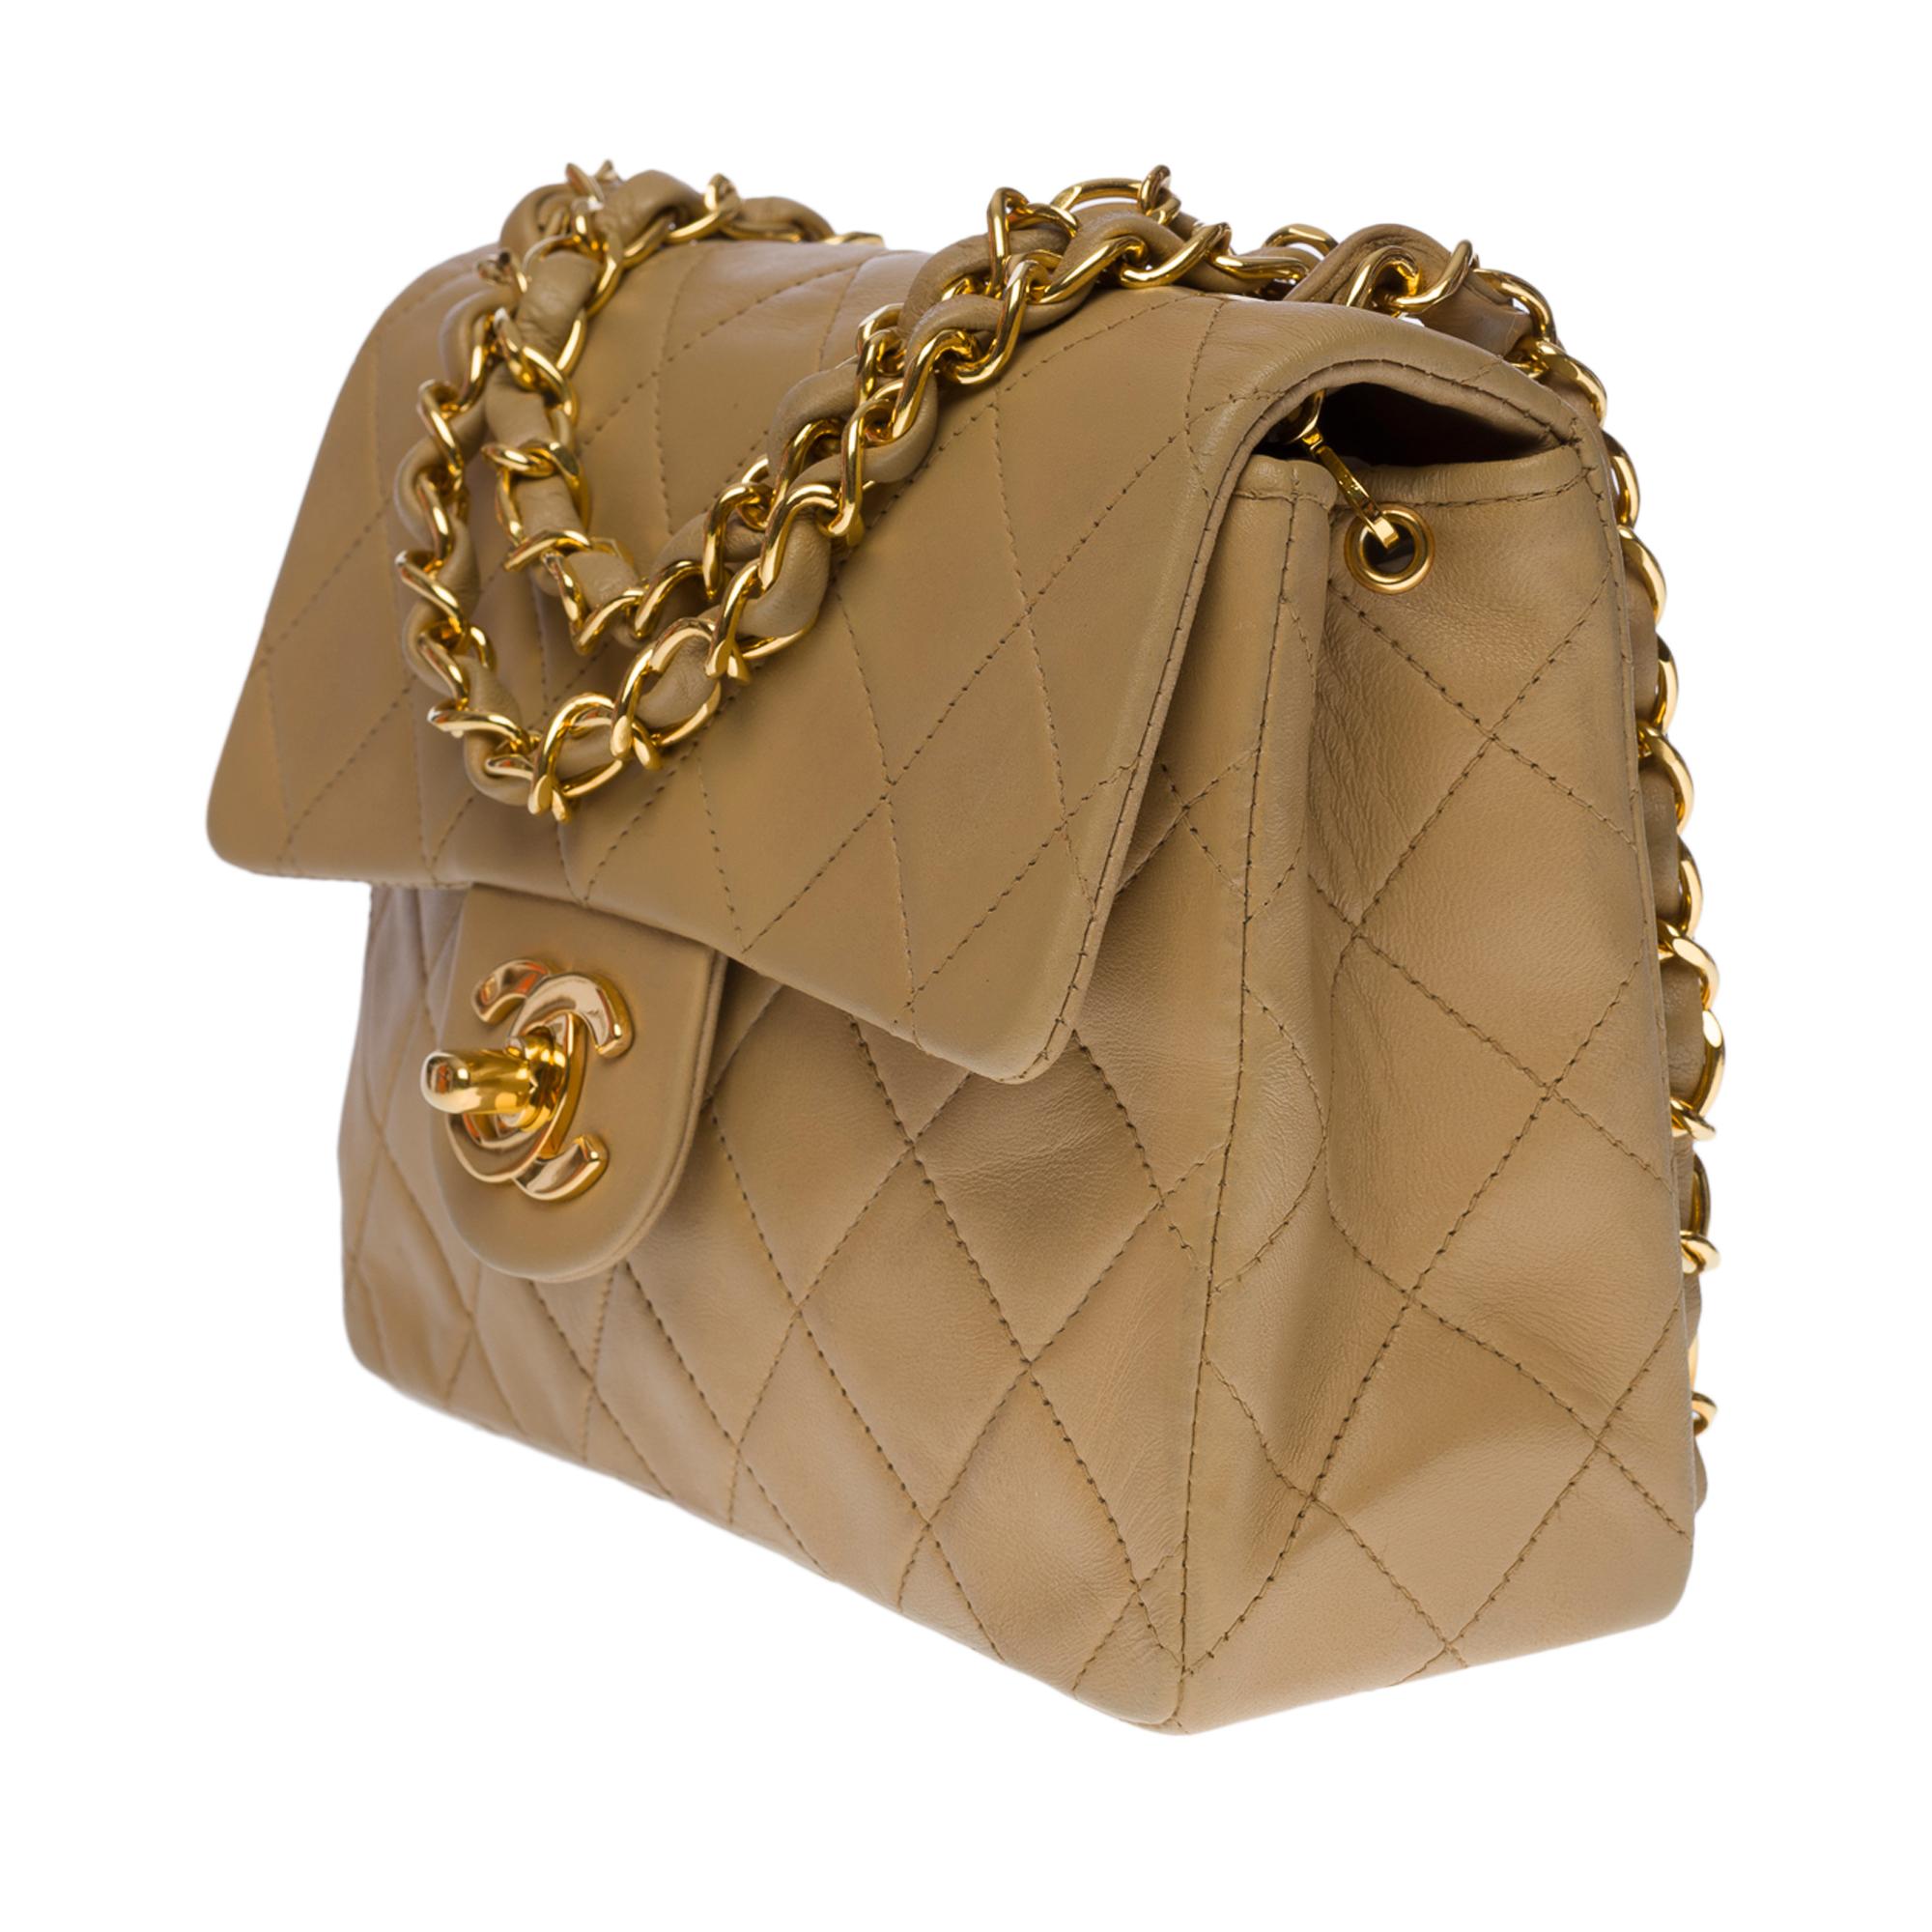 Women's Splendid Chanel Timeless Mini Flap bag in beige quilted lambskin, GHW